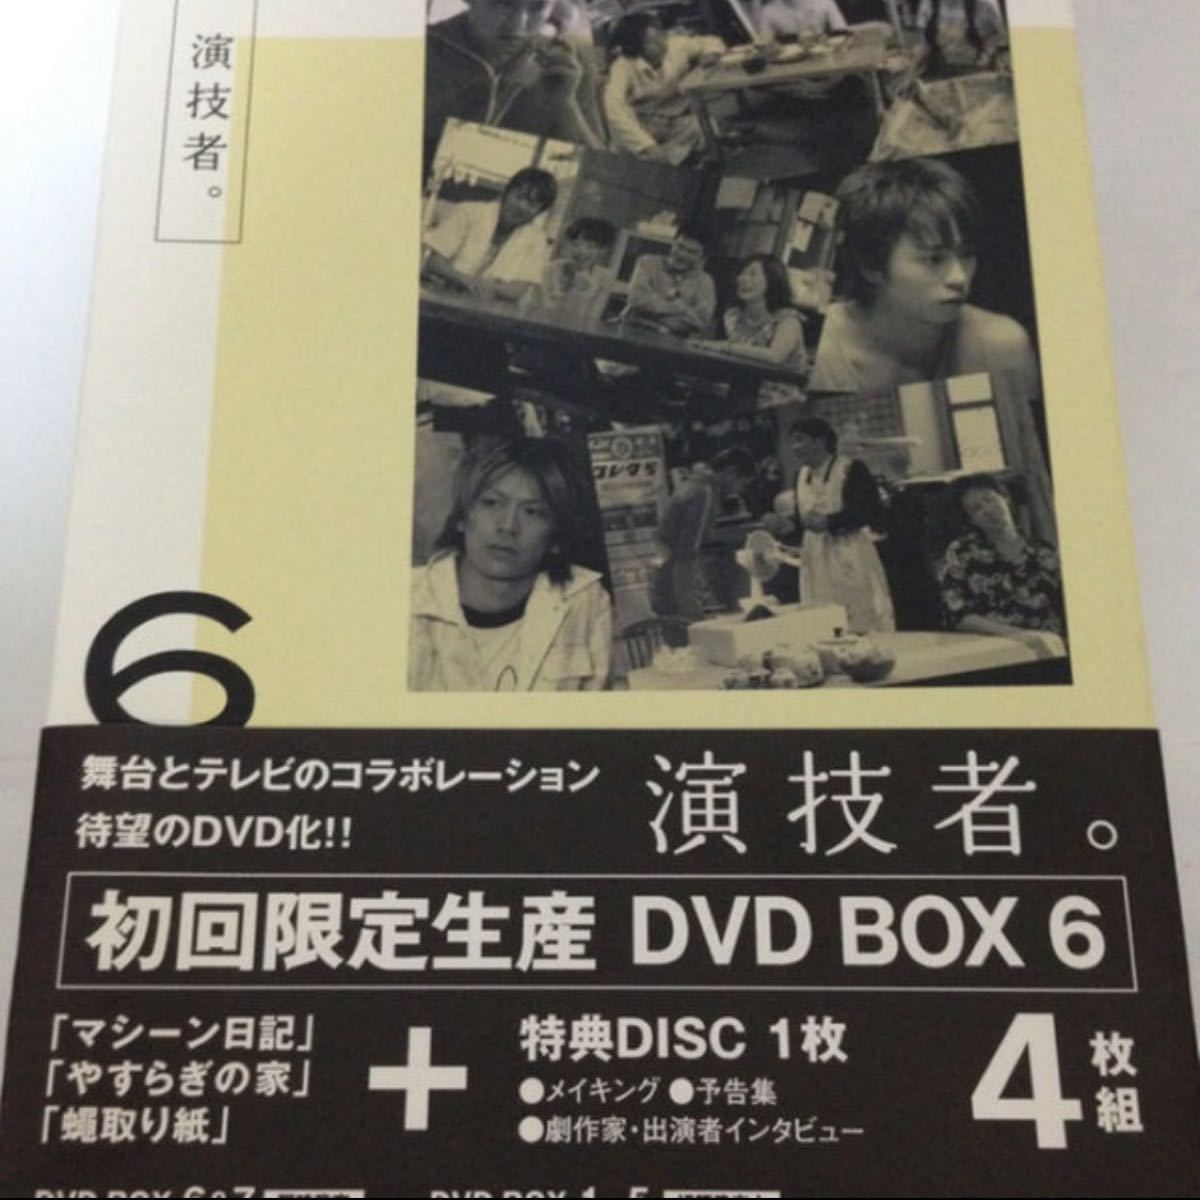 【初回限定DVD】『演技者。 3rdシリーズ Vol.6』★嵐/櫻井翔